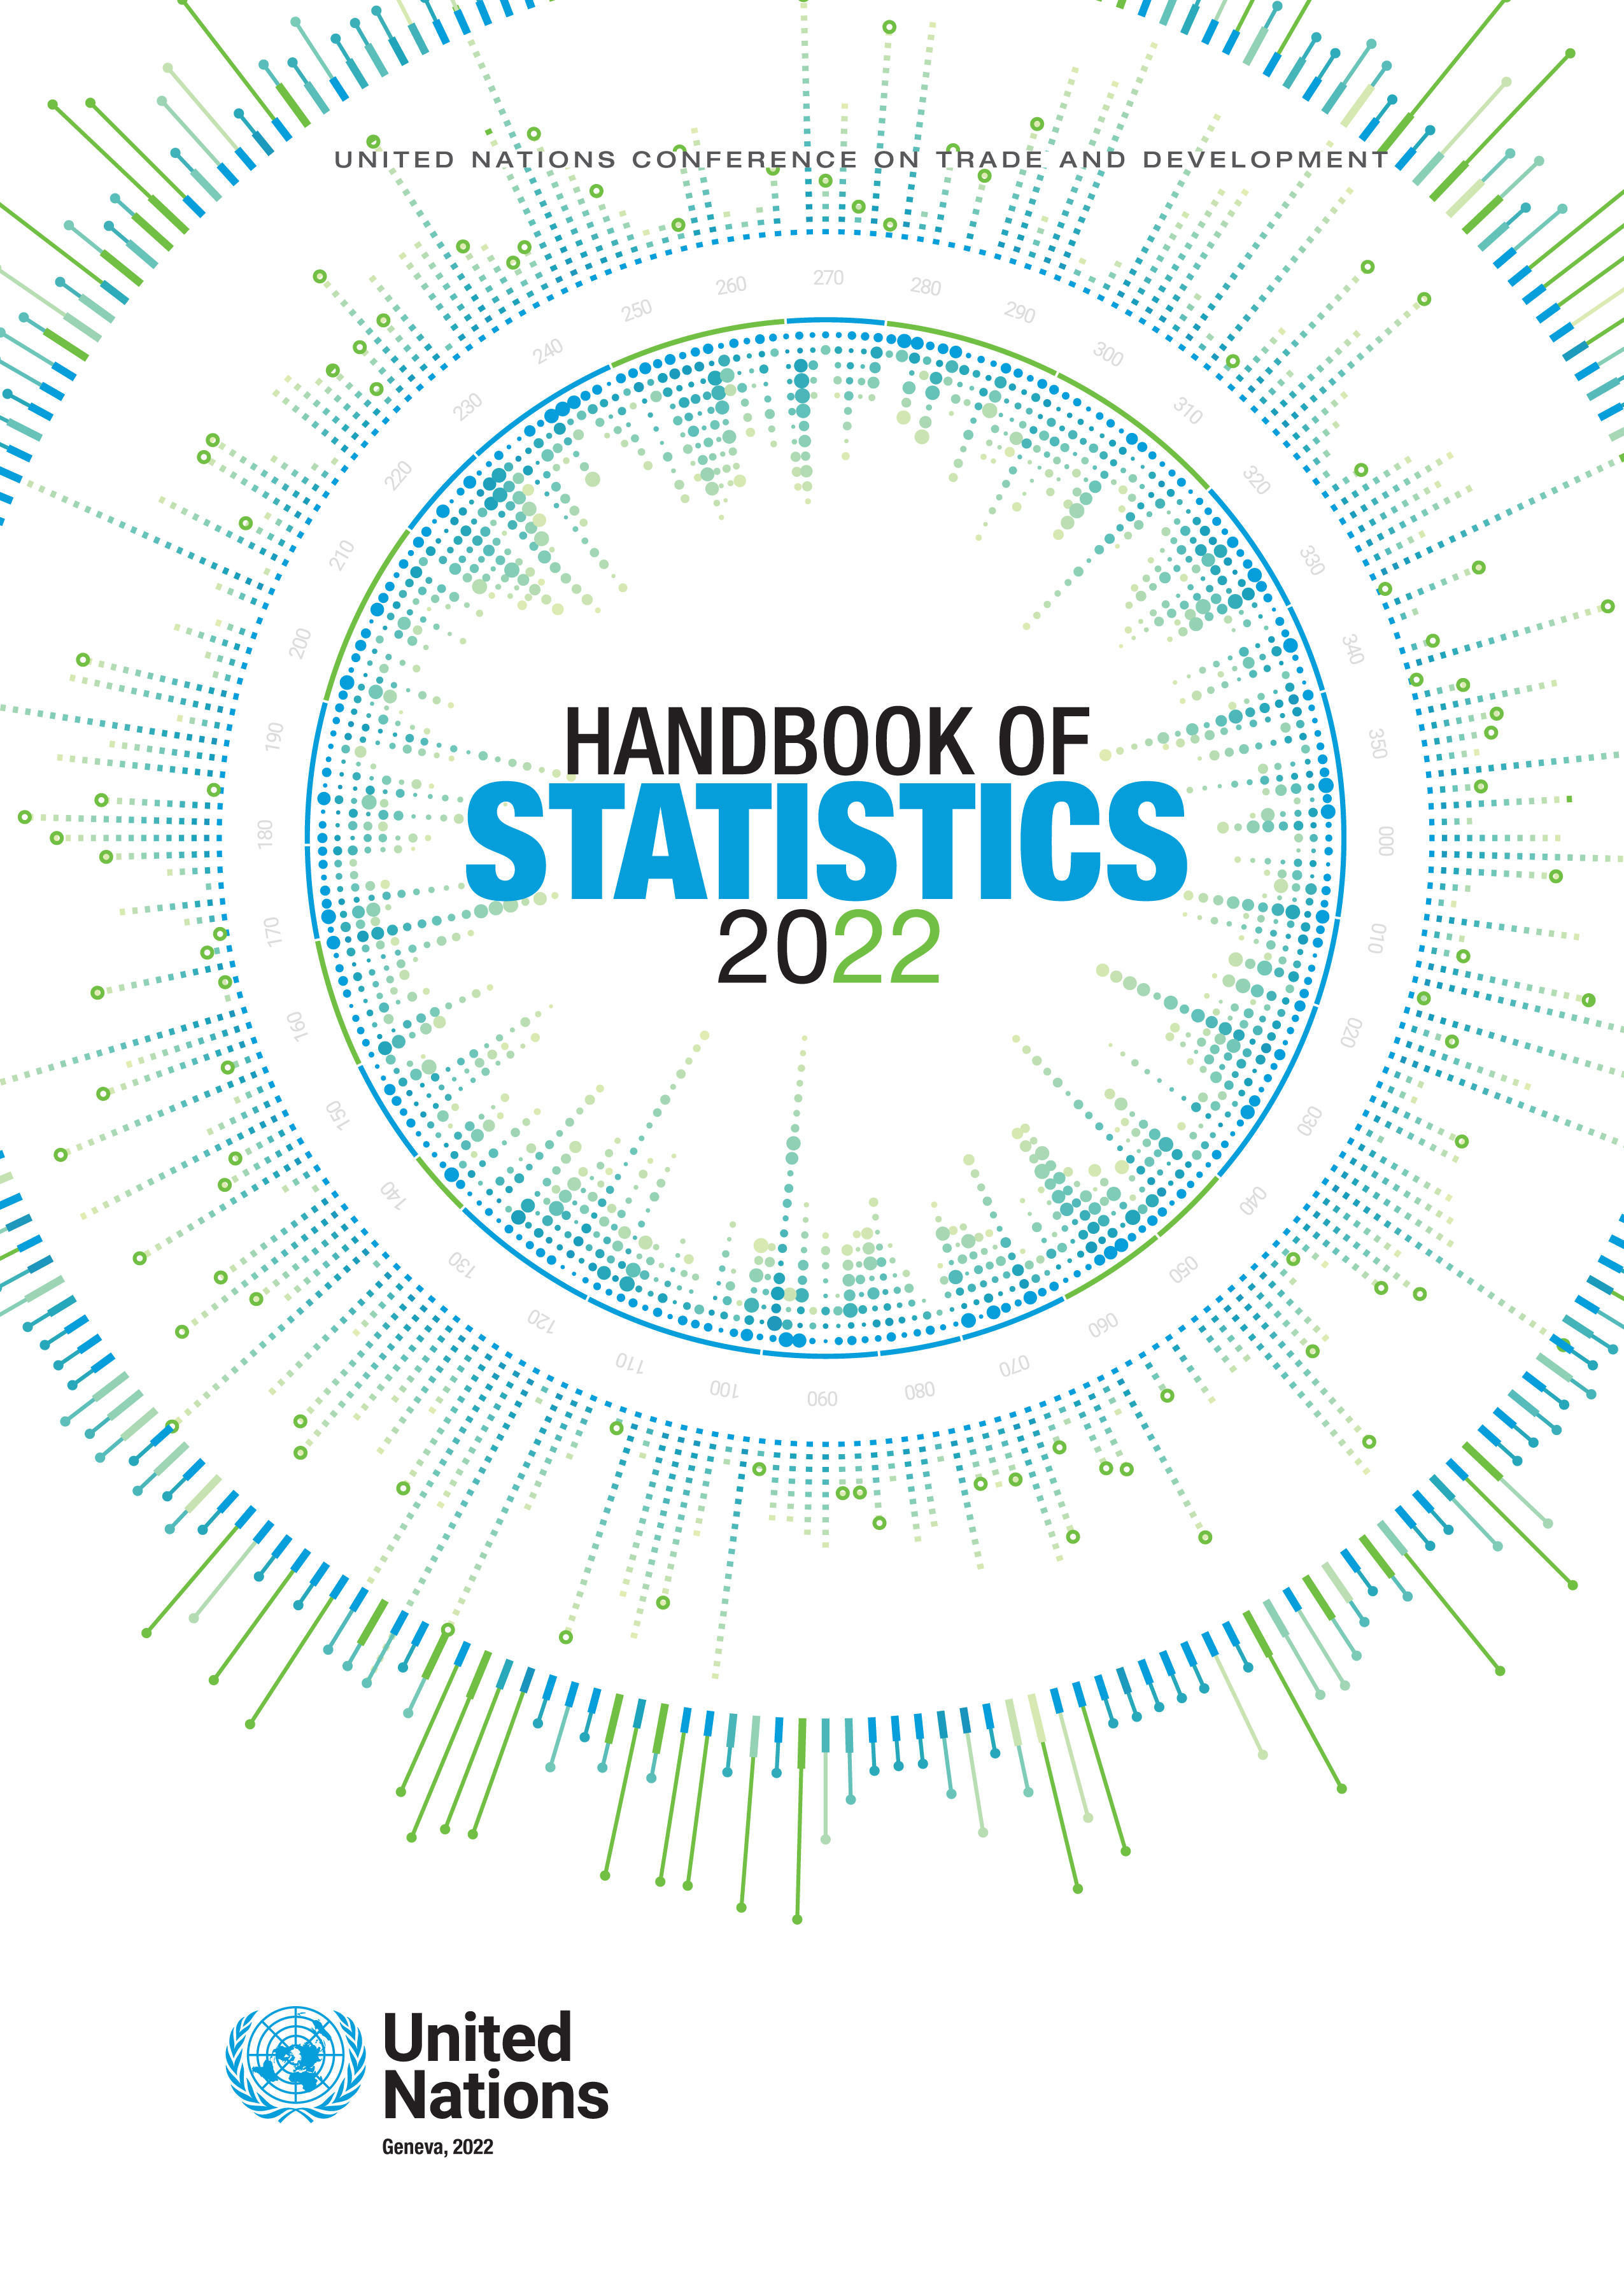 image of UNCTAD Handbook of Statistics 2022